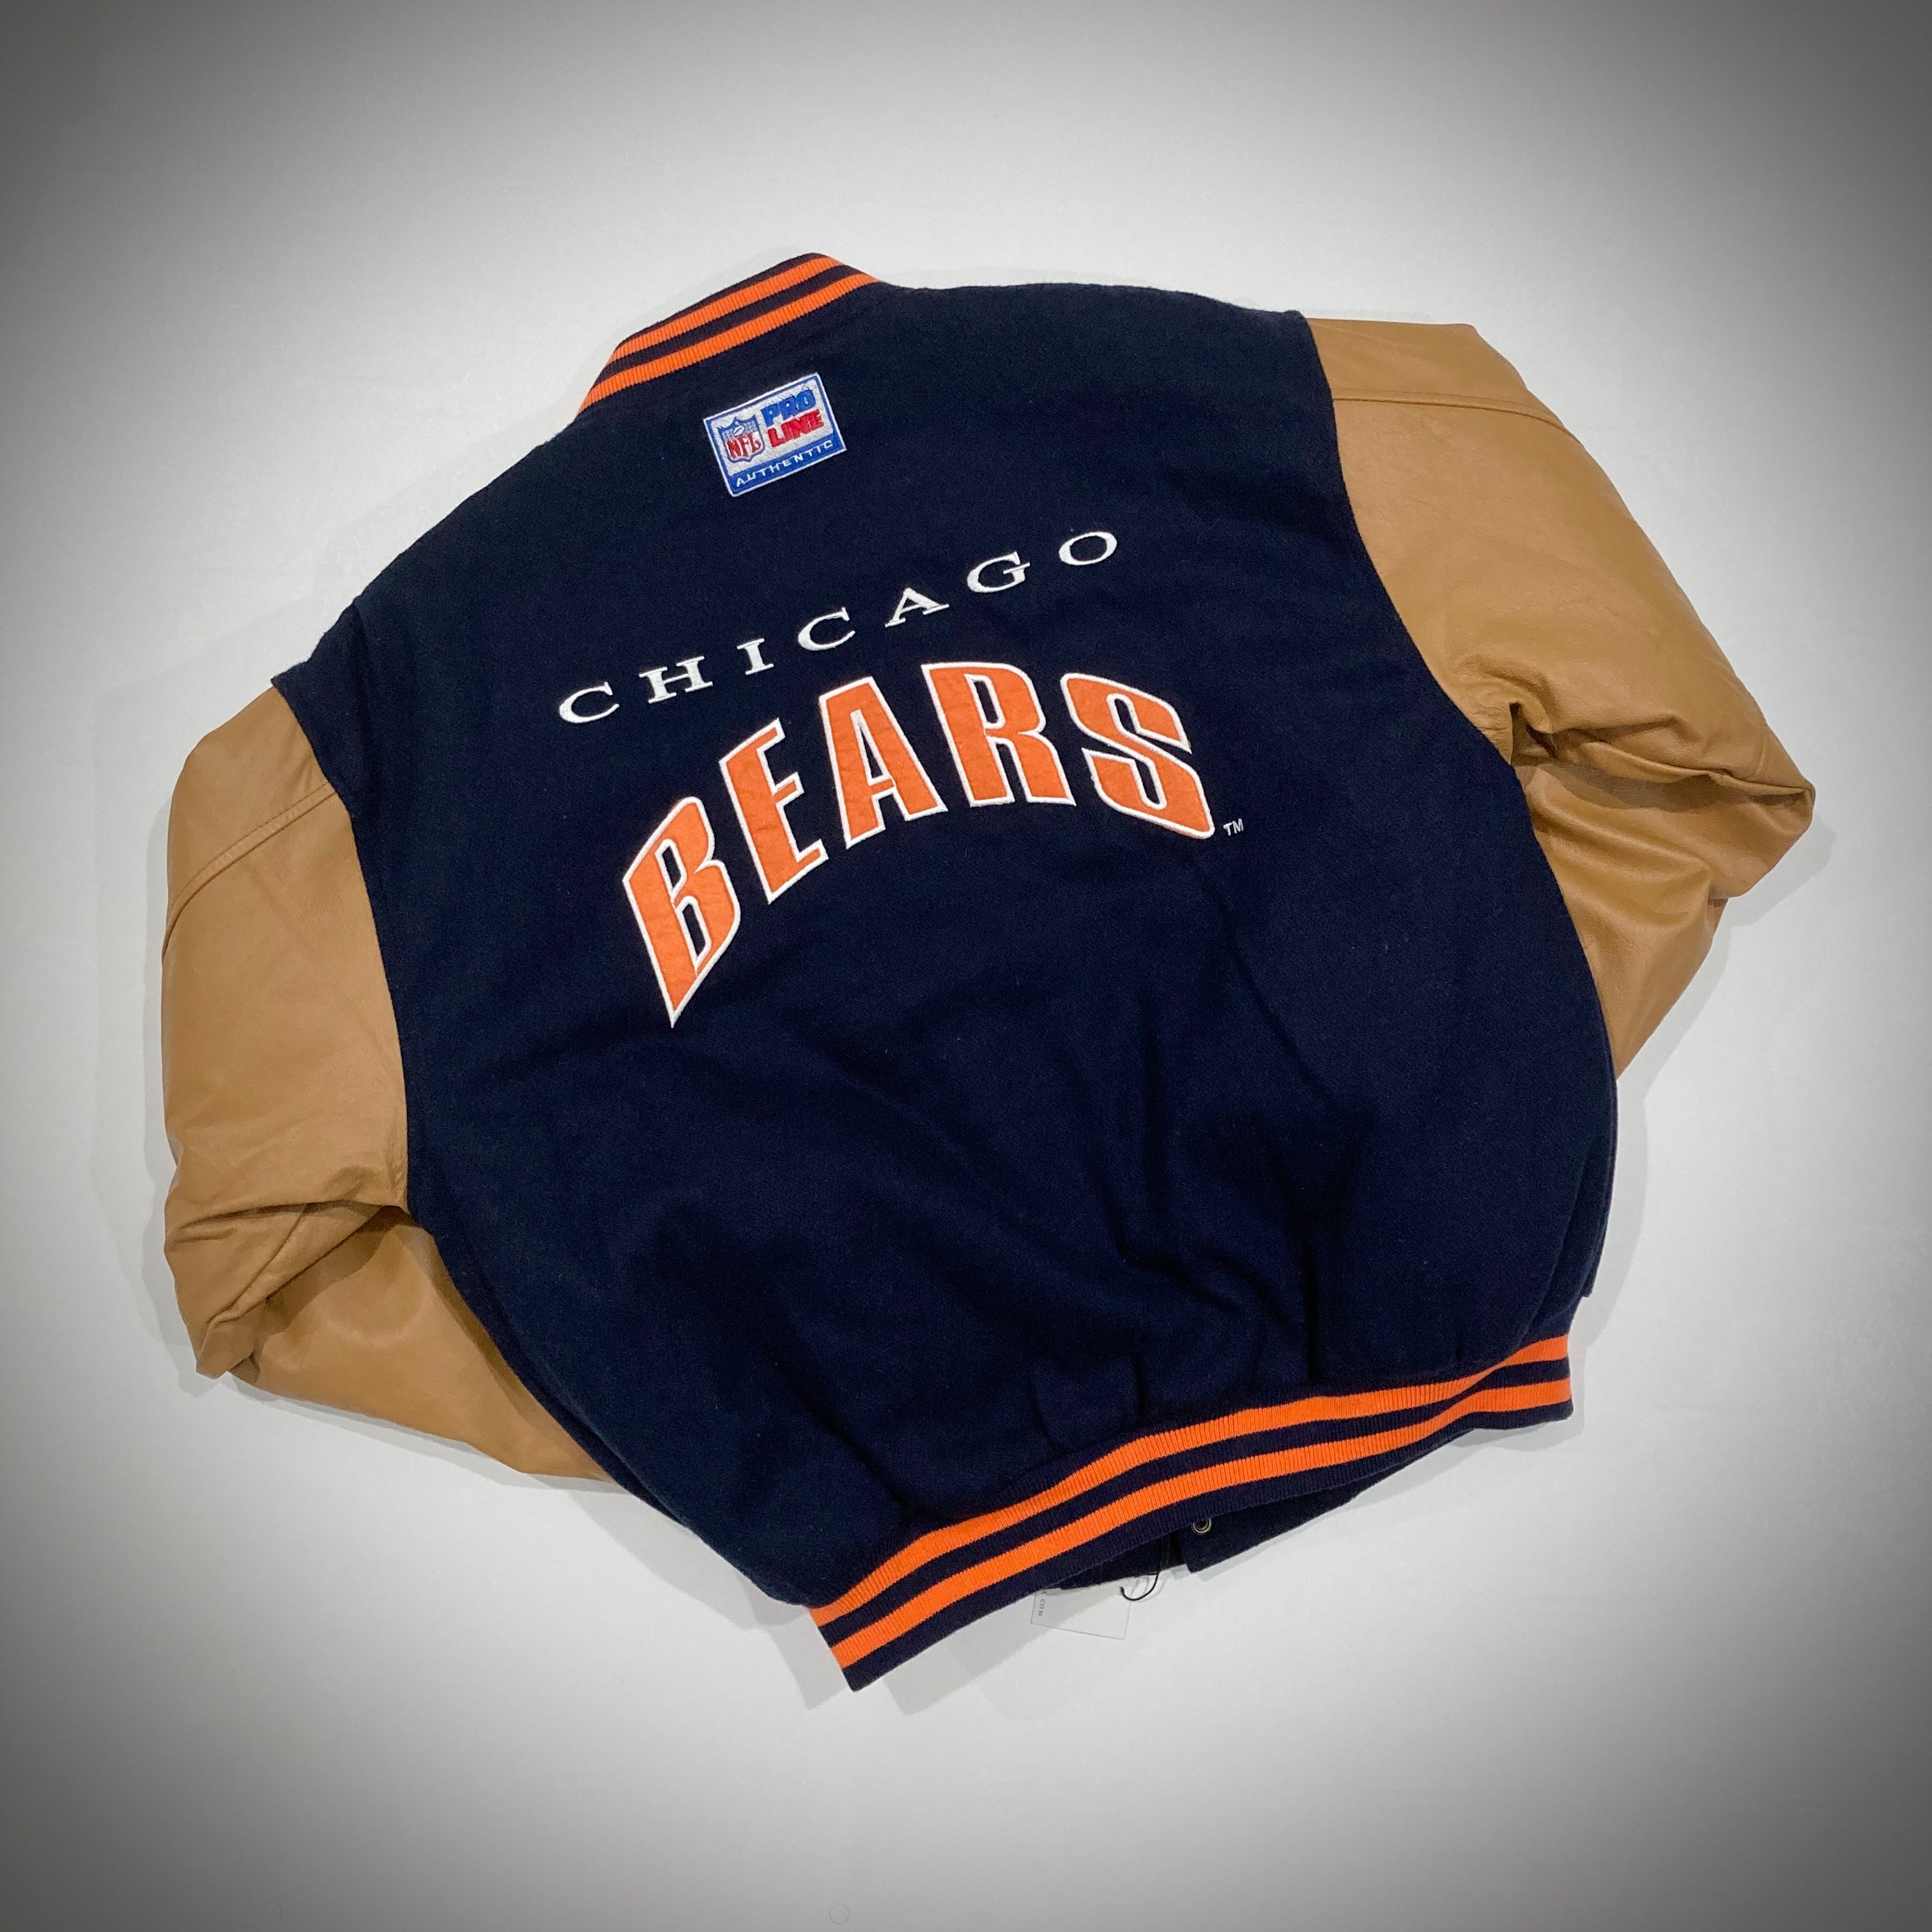 Vintage Chicago Bears LogoAthletic Varsity Jacket